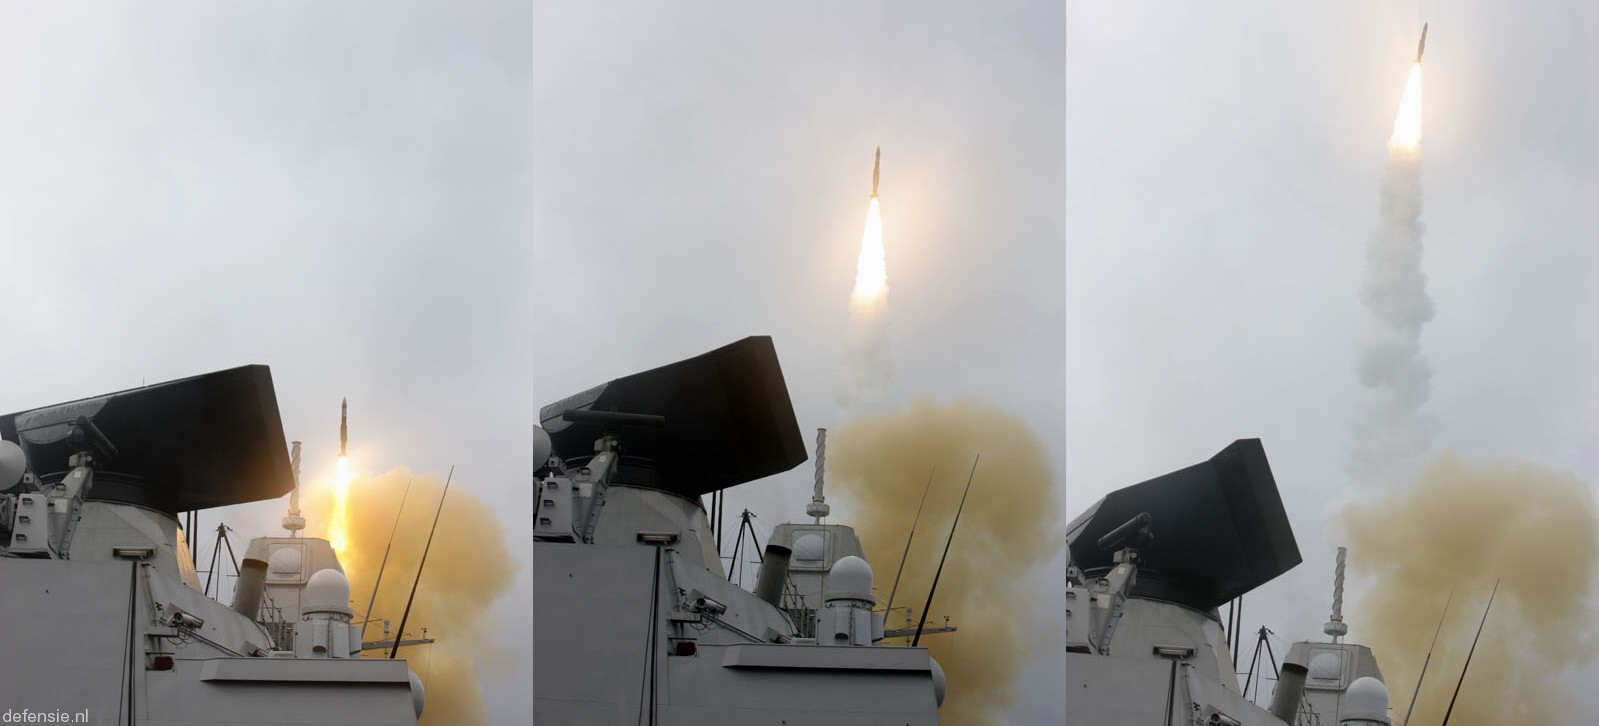 f-803 hnlms tromp guided missile frigate ffg air defense lcf royal netherlands navy 40 rim-66 standard sm-2mr sam